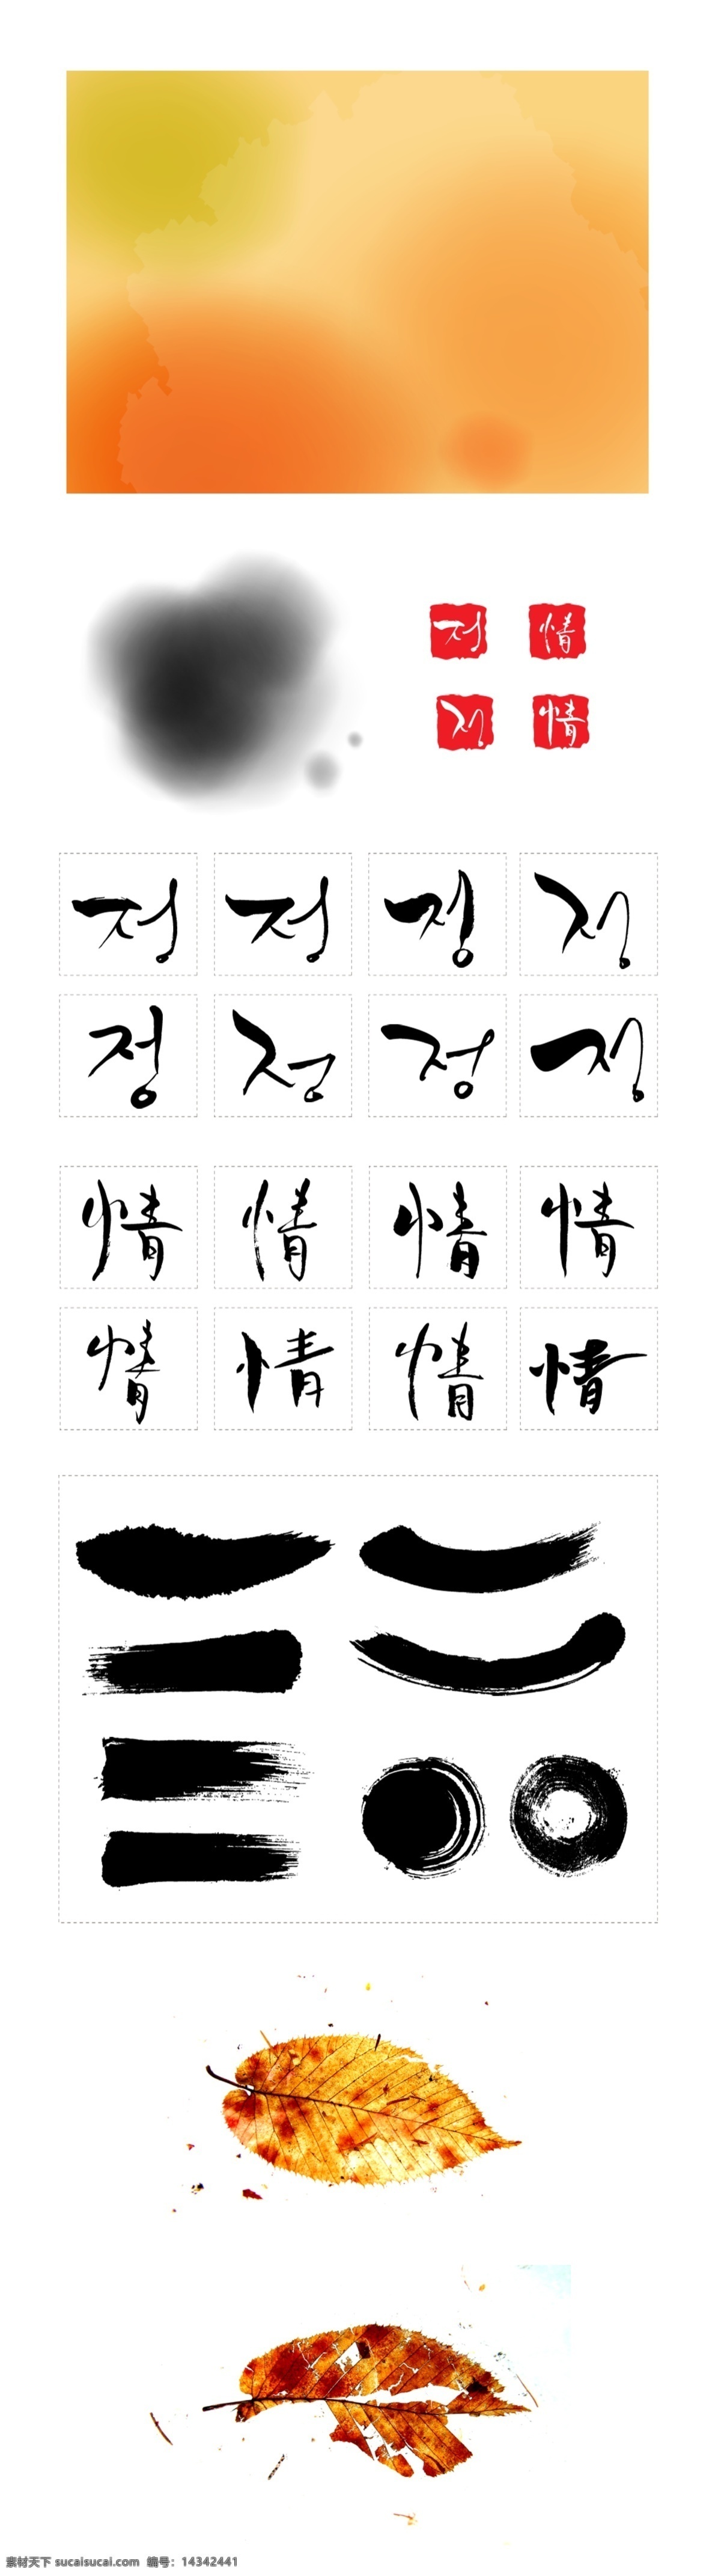 水墨 韩国 字体 笔刷效果 古典风格 花纹 喷溅效果 中国风 psd源文件